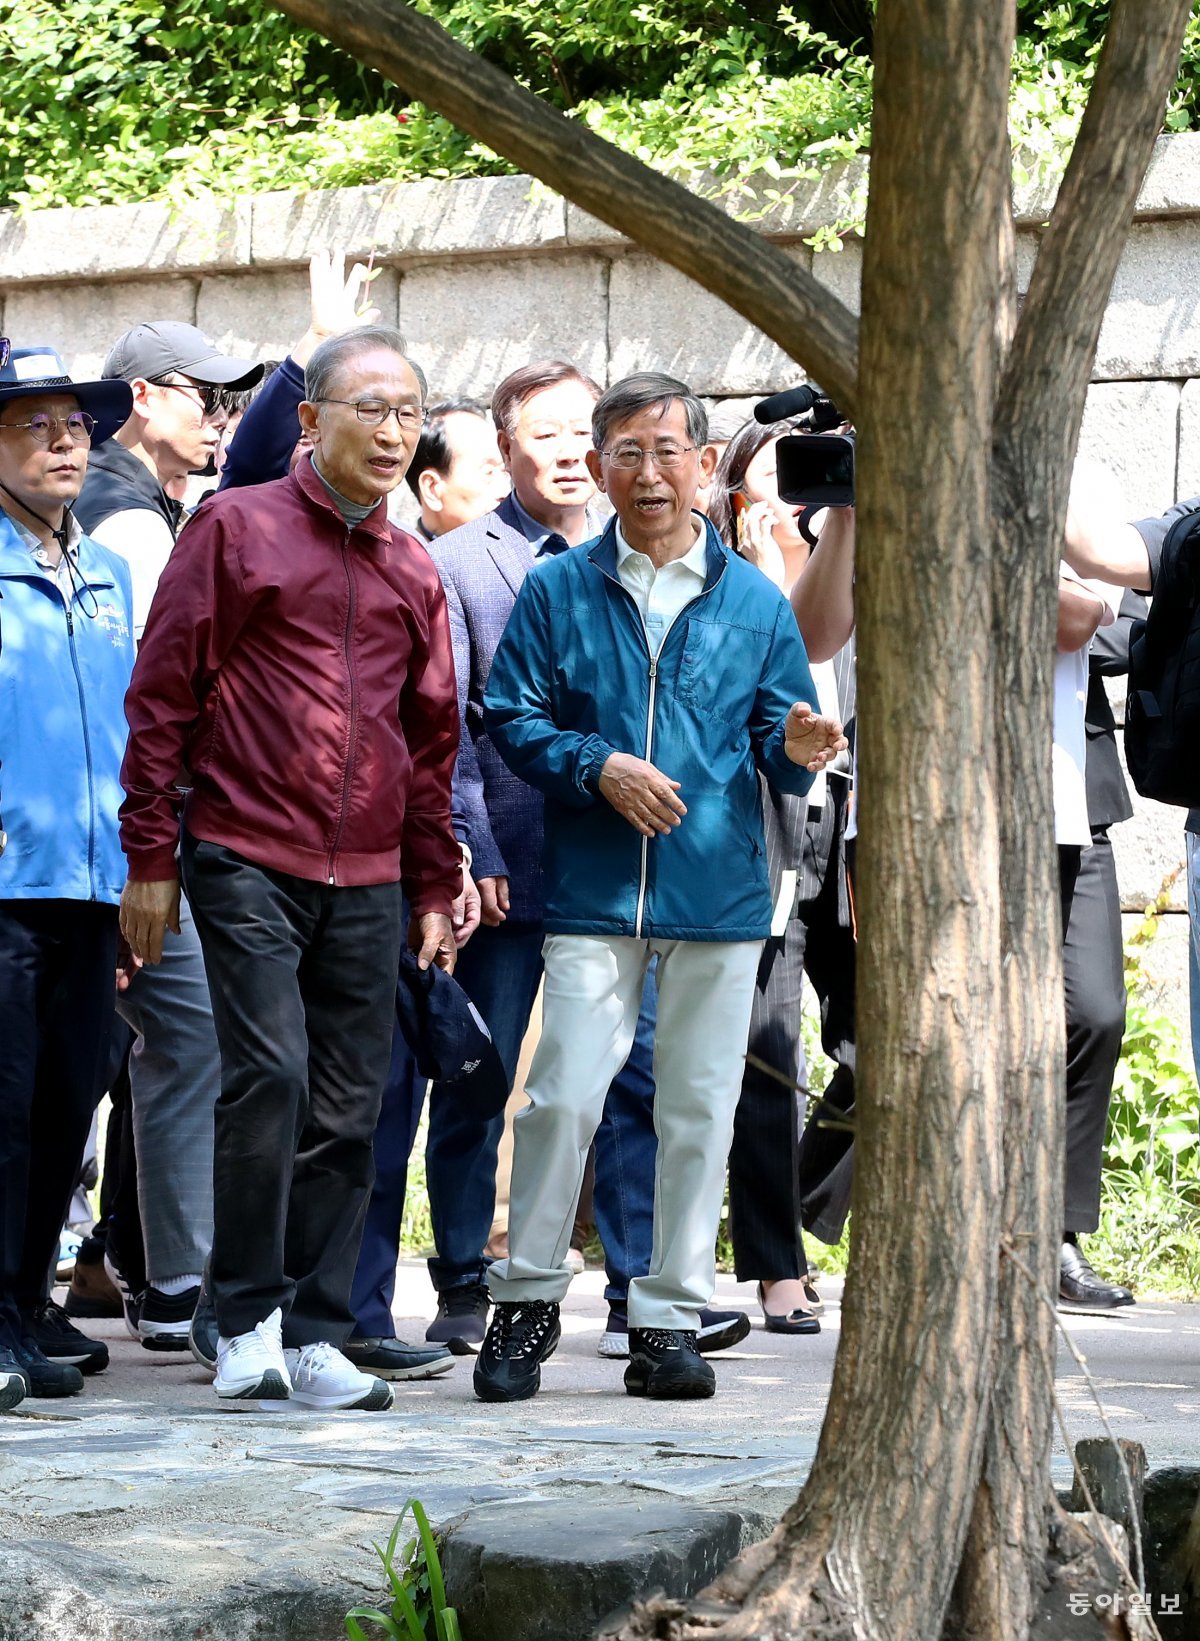 15일 이명박 전 대통령이 서울 청계천 광교 앞을 지나며  측근들과 대화하며 산책하고 있다. 전영한 기자 scoopjyh@donga.com